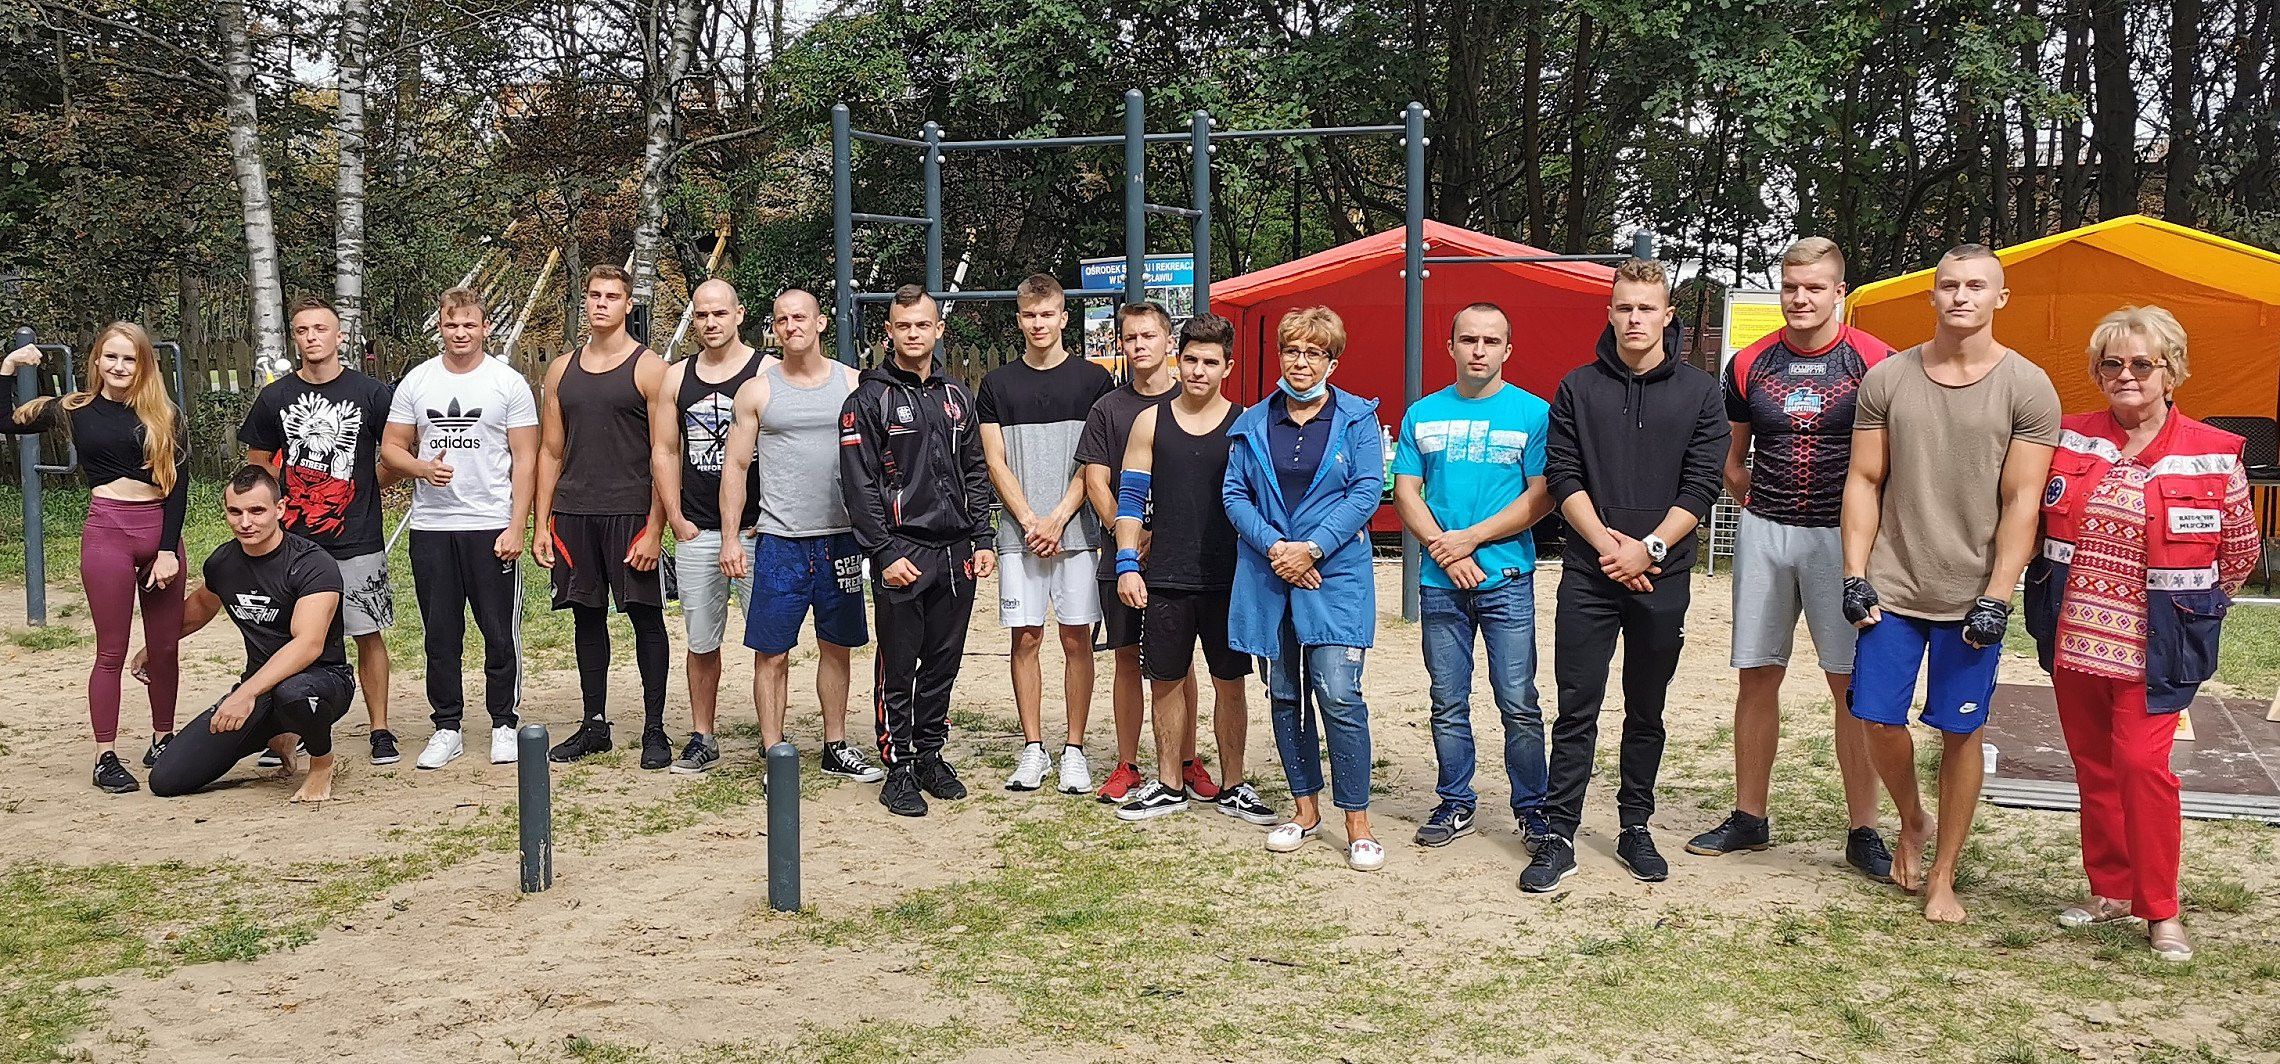 Inowrocław - Mistrzostwa w street workout w Solankach